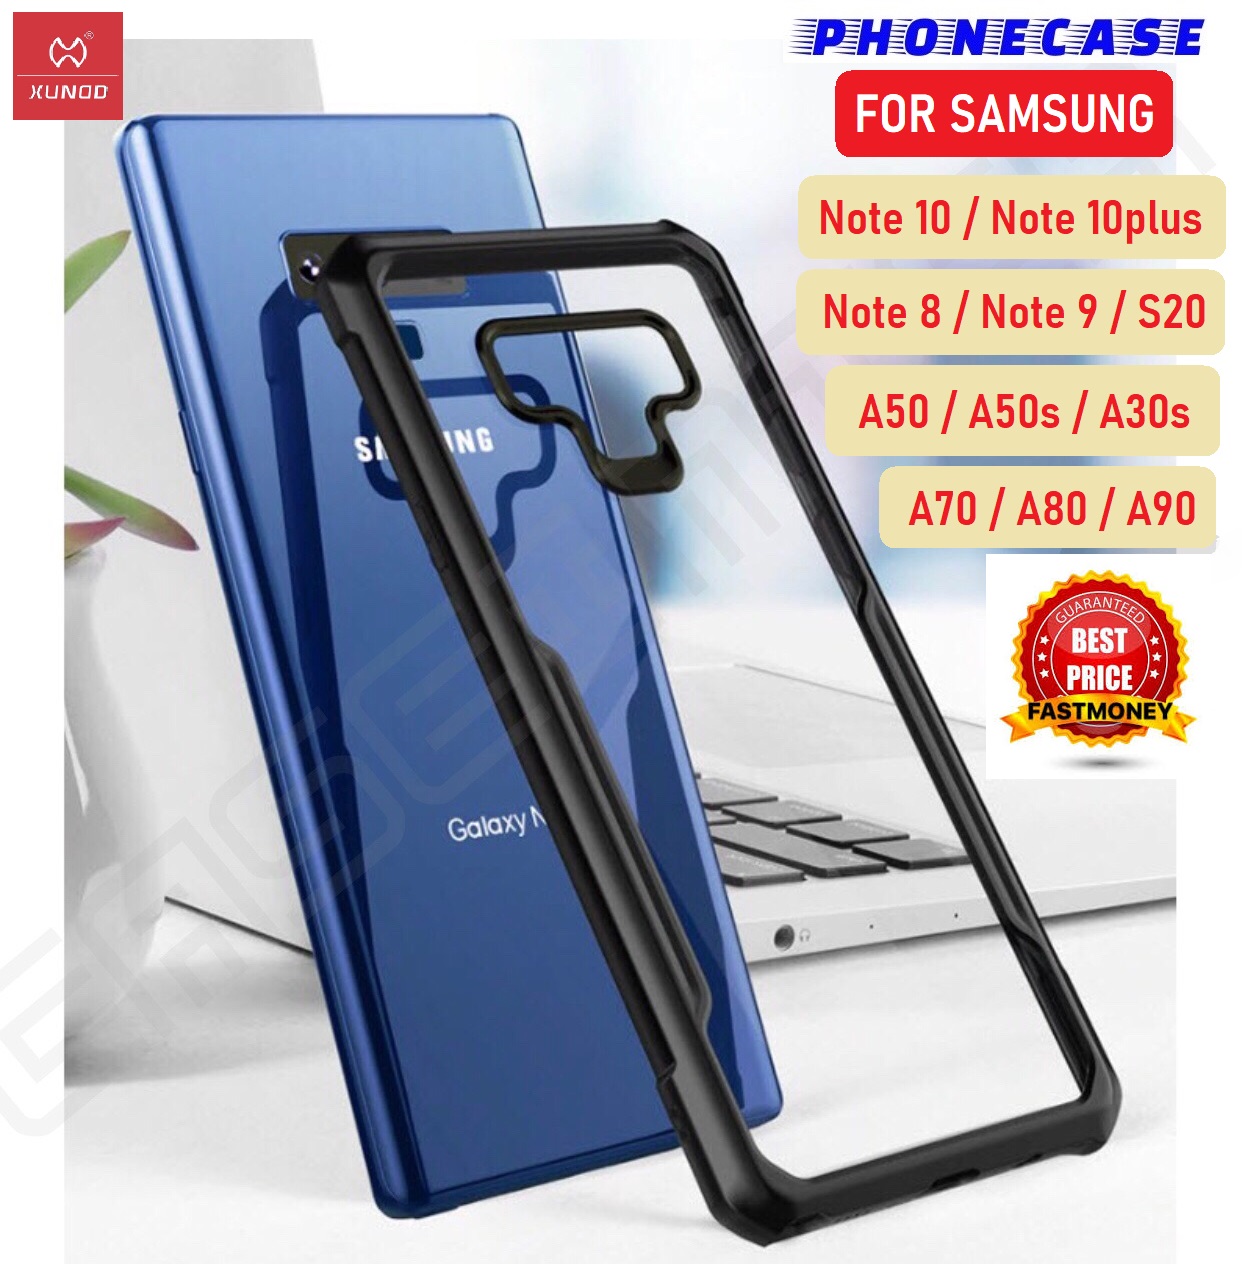 ❌รับประกันสินค้า❌ XUNDD Case Samsung A10s A20s A30s A50s A10 A20 A30 A50 A70 A80 Note8 Note9 เคสซัมซุง ของแท้ 100% เคสกันกระแทก หลังใส คุณภาพดีเยี่ยม รุ่น Beatle Series เคสยี่ห้อ พรีเมี่ยมเคส Case Premium Original  ตระกูลสี ขอบดำรูปแบบรุ่นที่ีรองรับ Samsung A70